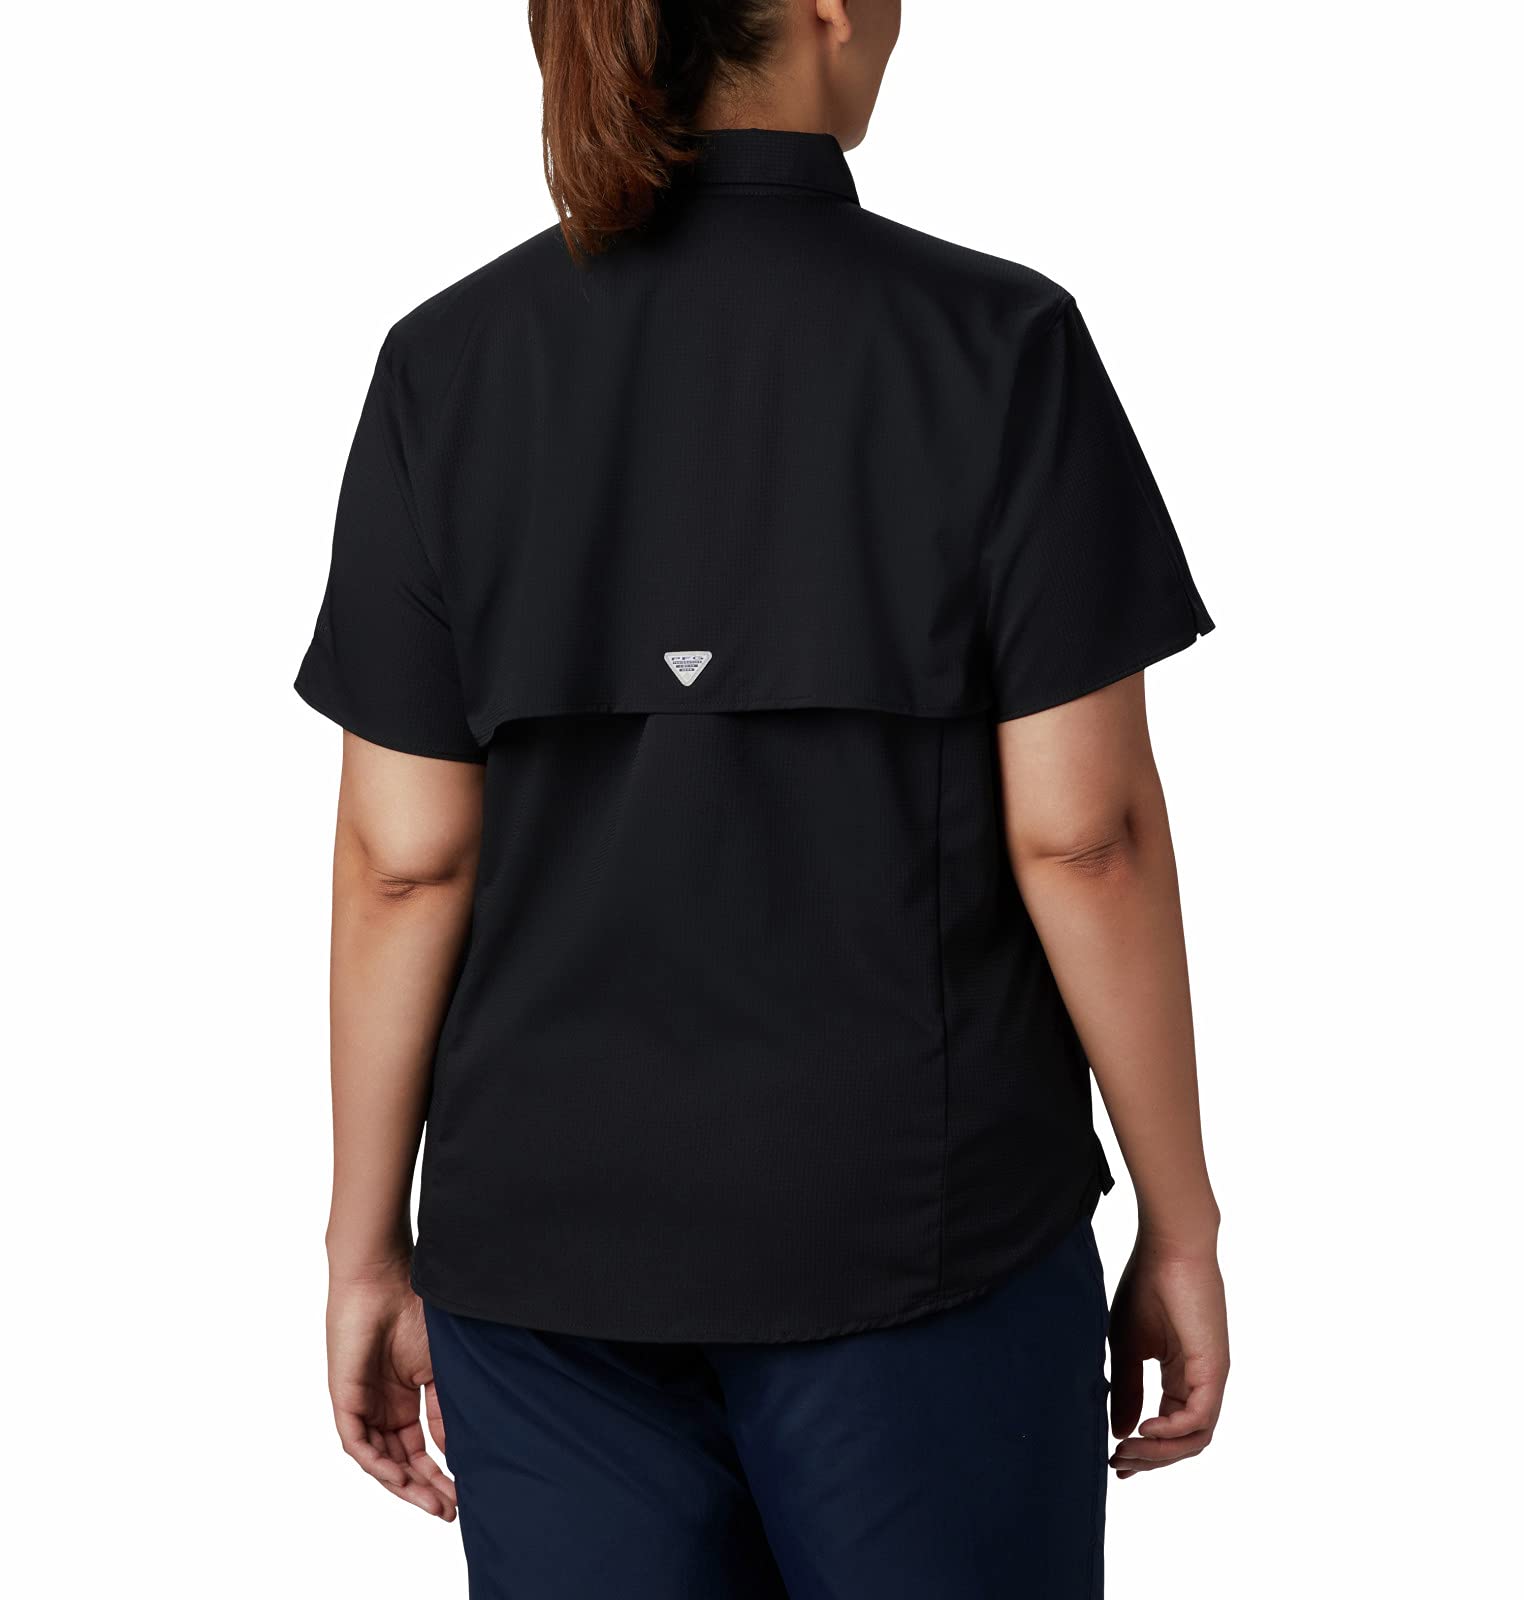 Columbia Women's PFG Tamiami II UPF 40 Short Sleeve Fishing Shirt, Black, Medium